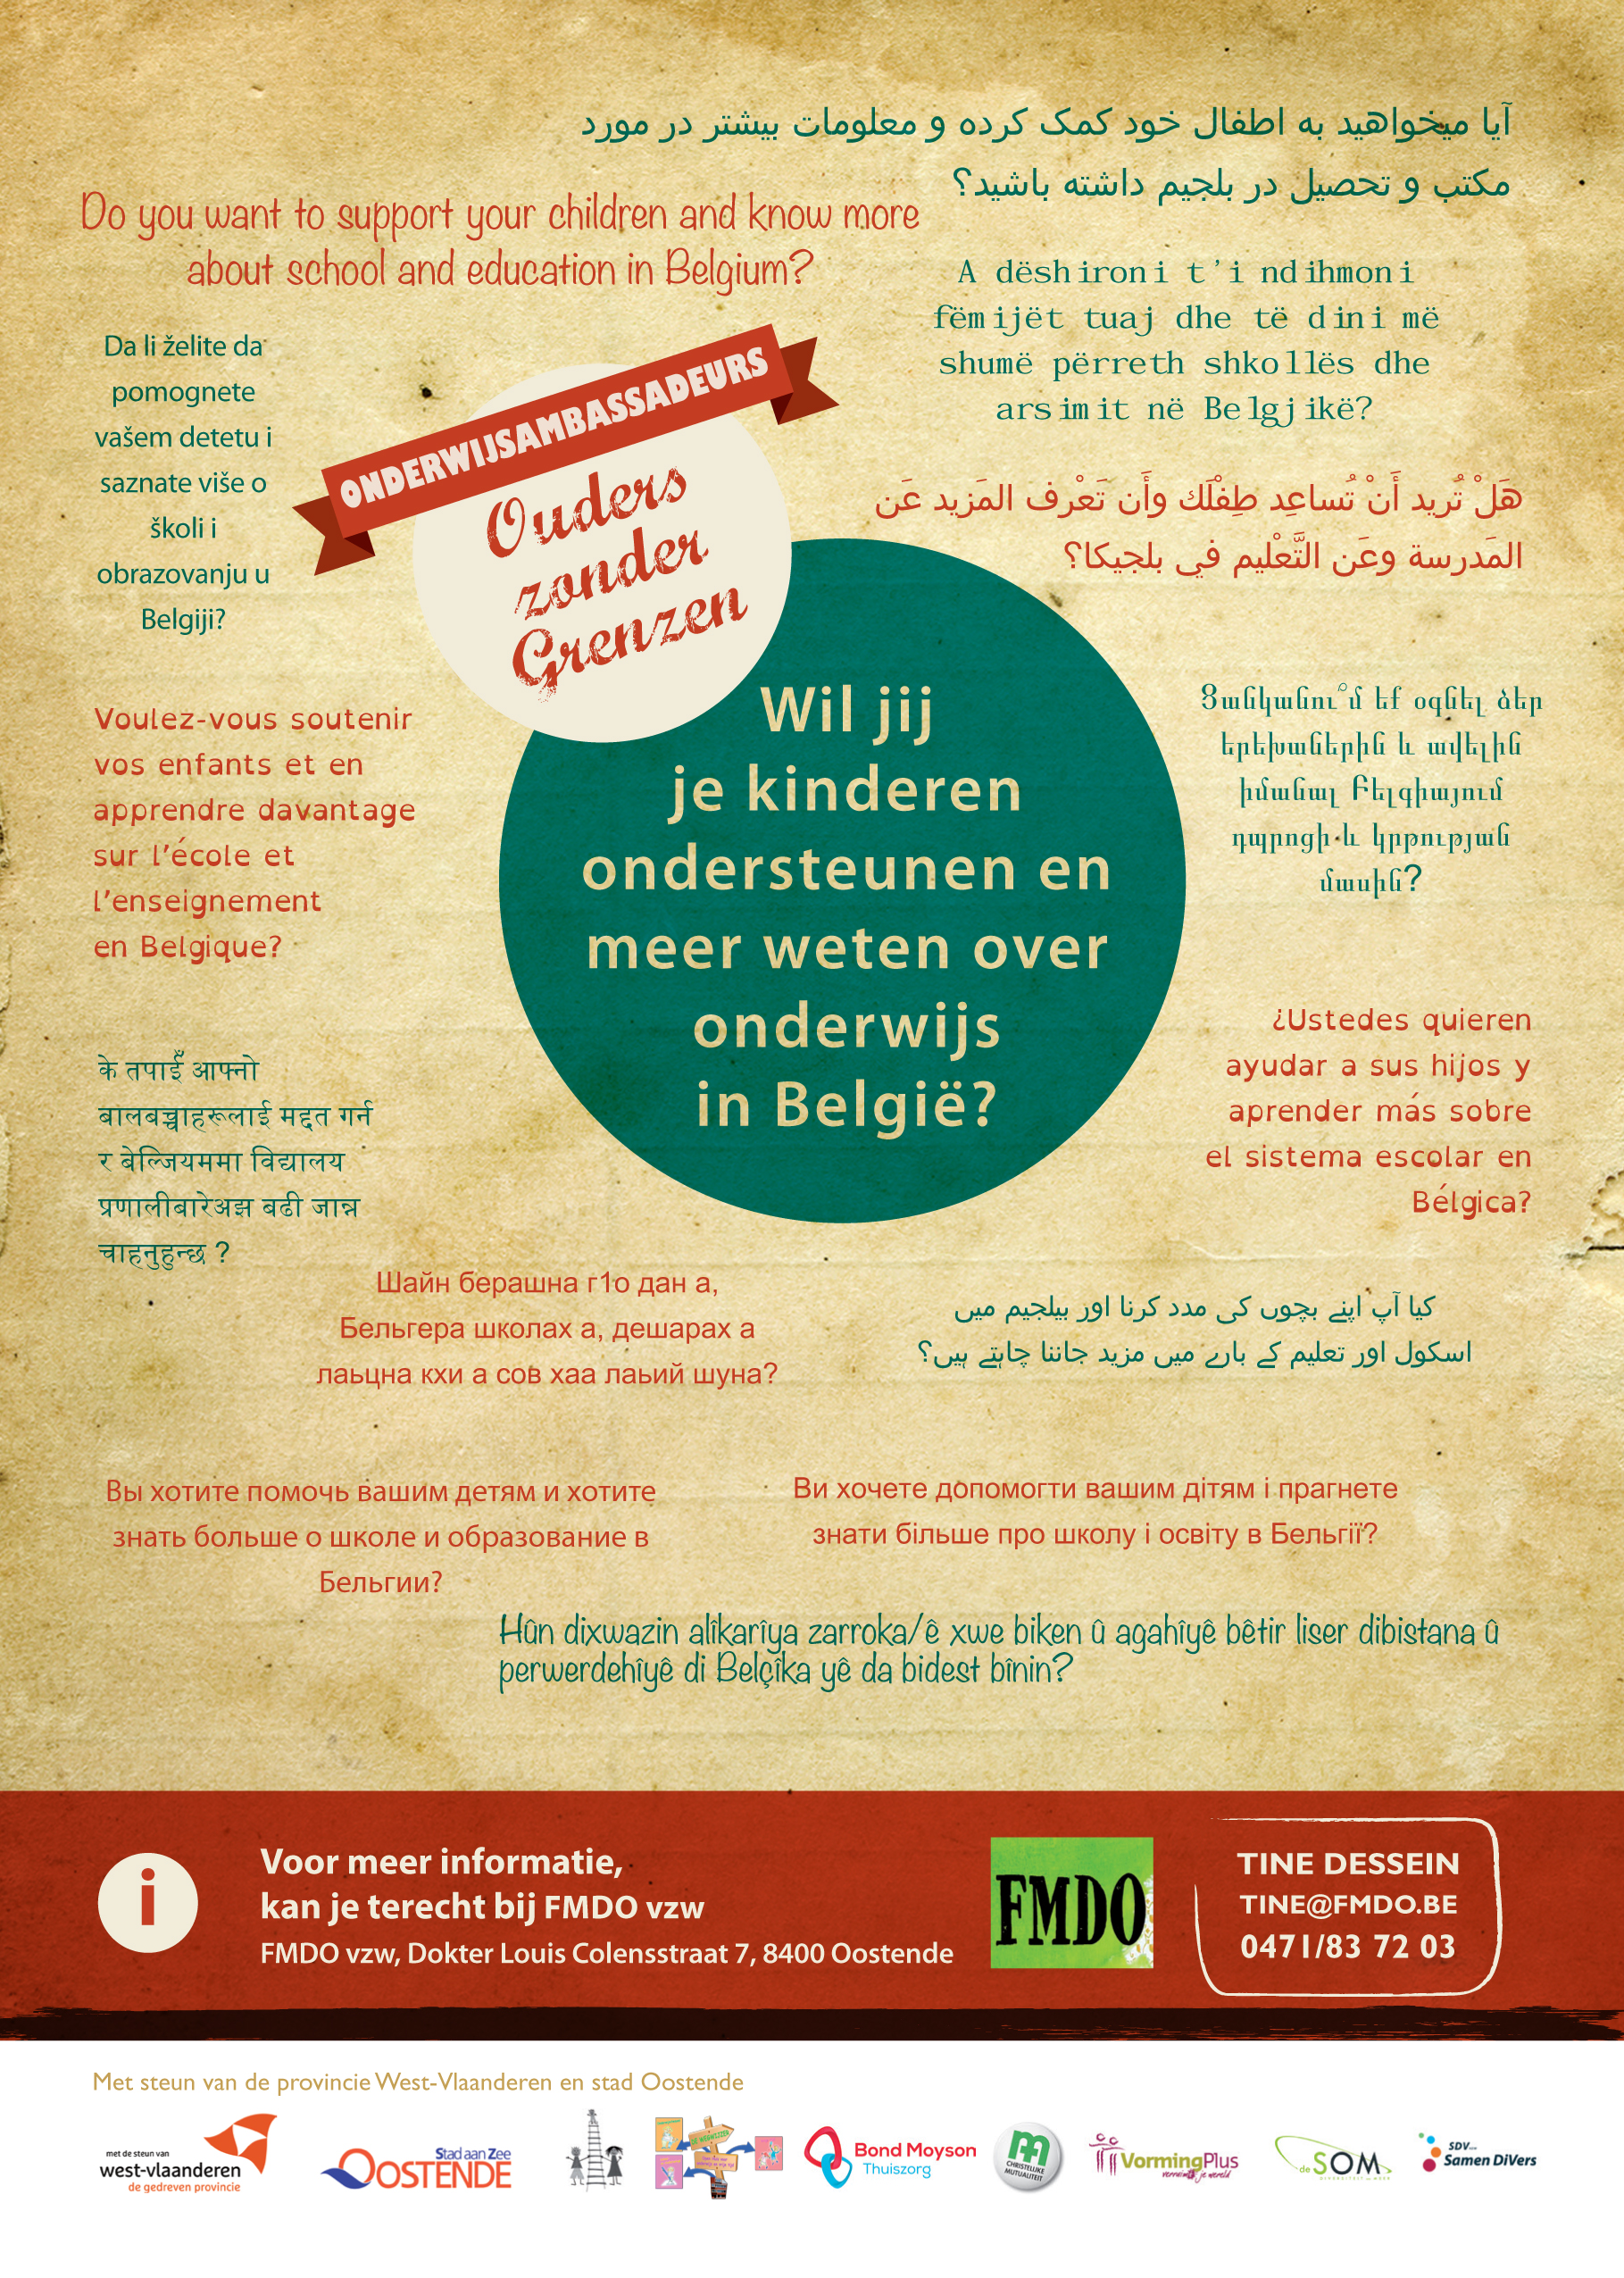 Kom naar FMDO Oostende voor informatie over onderwijs in je eigen moedertaal!